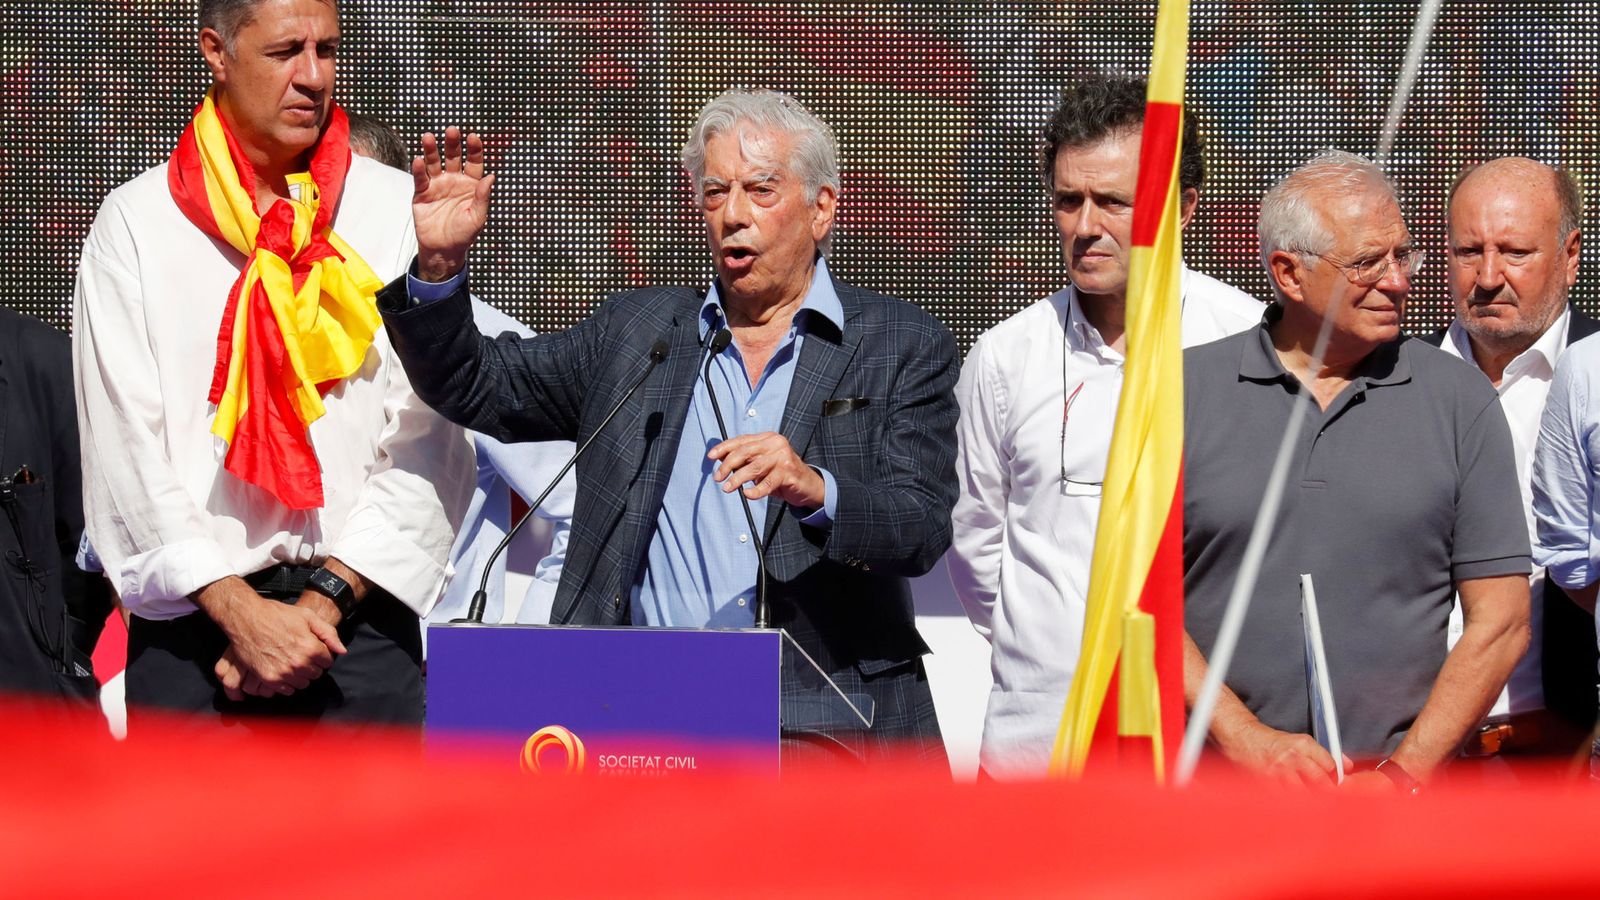 Foto: El Premio Nobel de Literatura Mario Vargas Llosa.